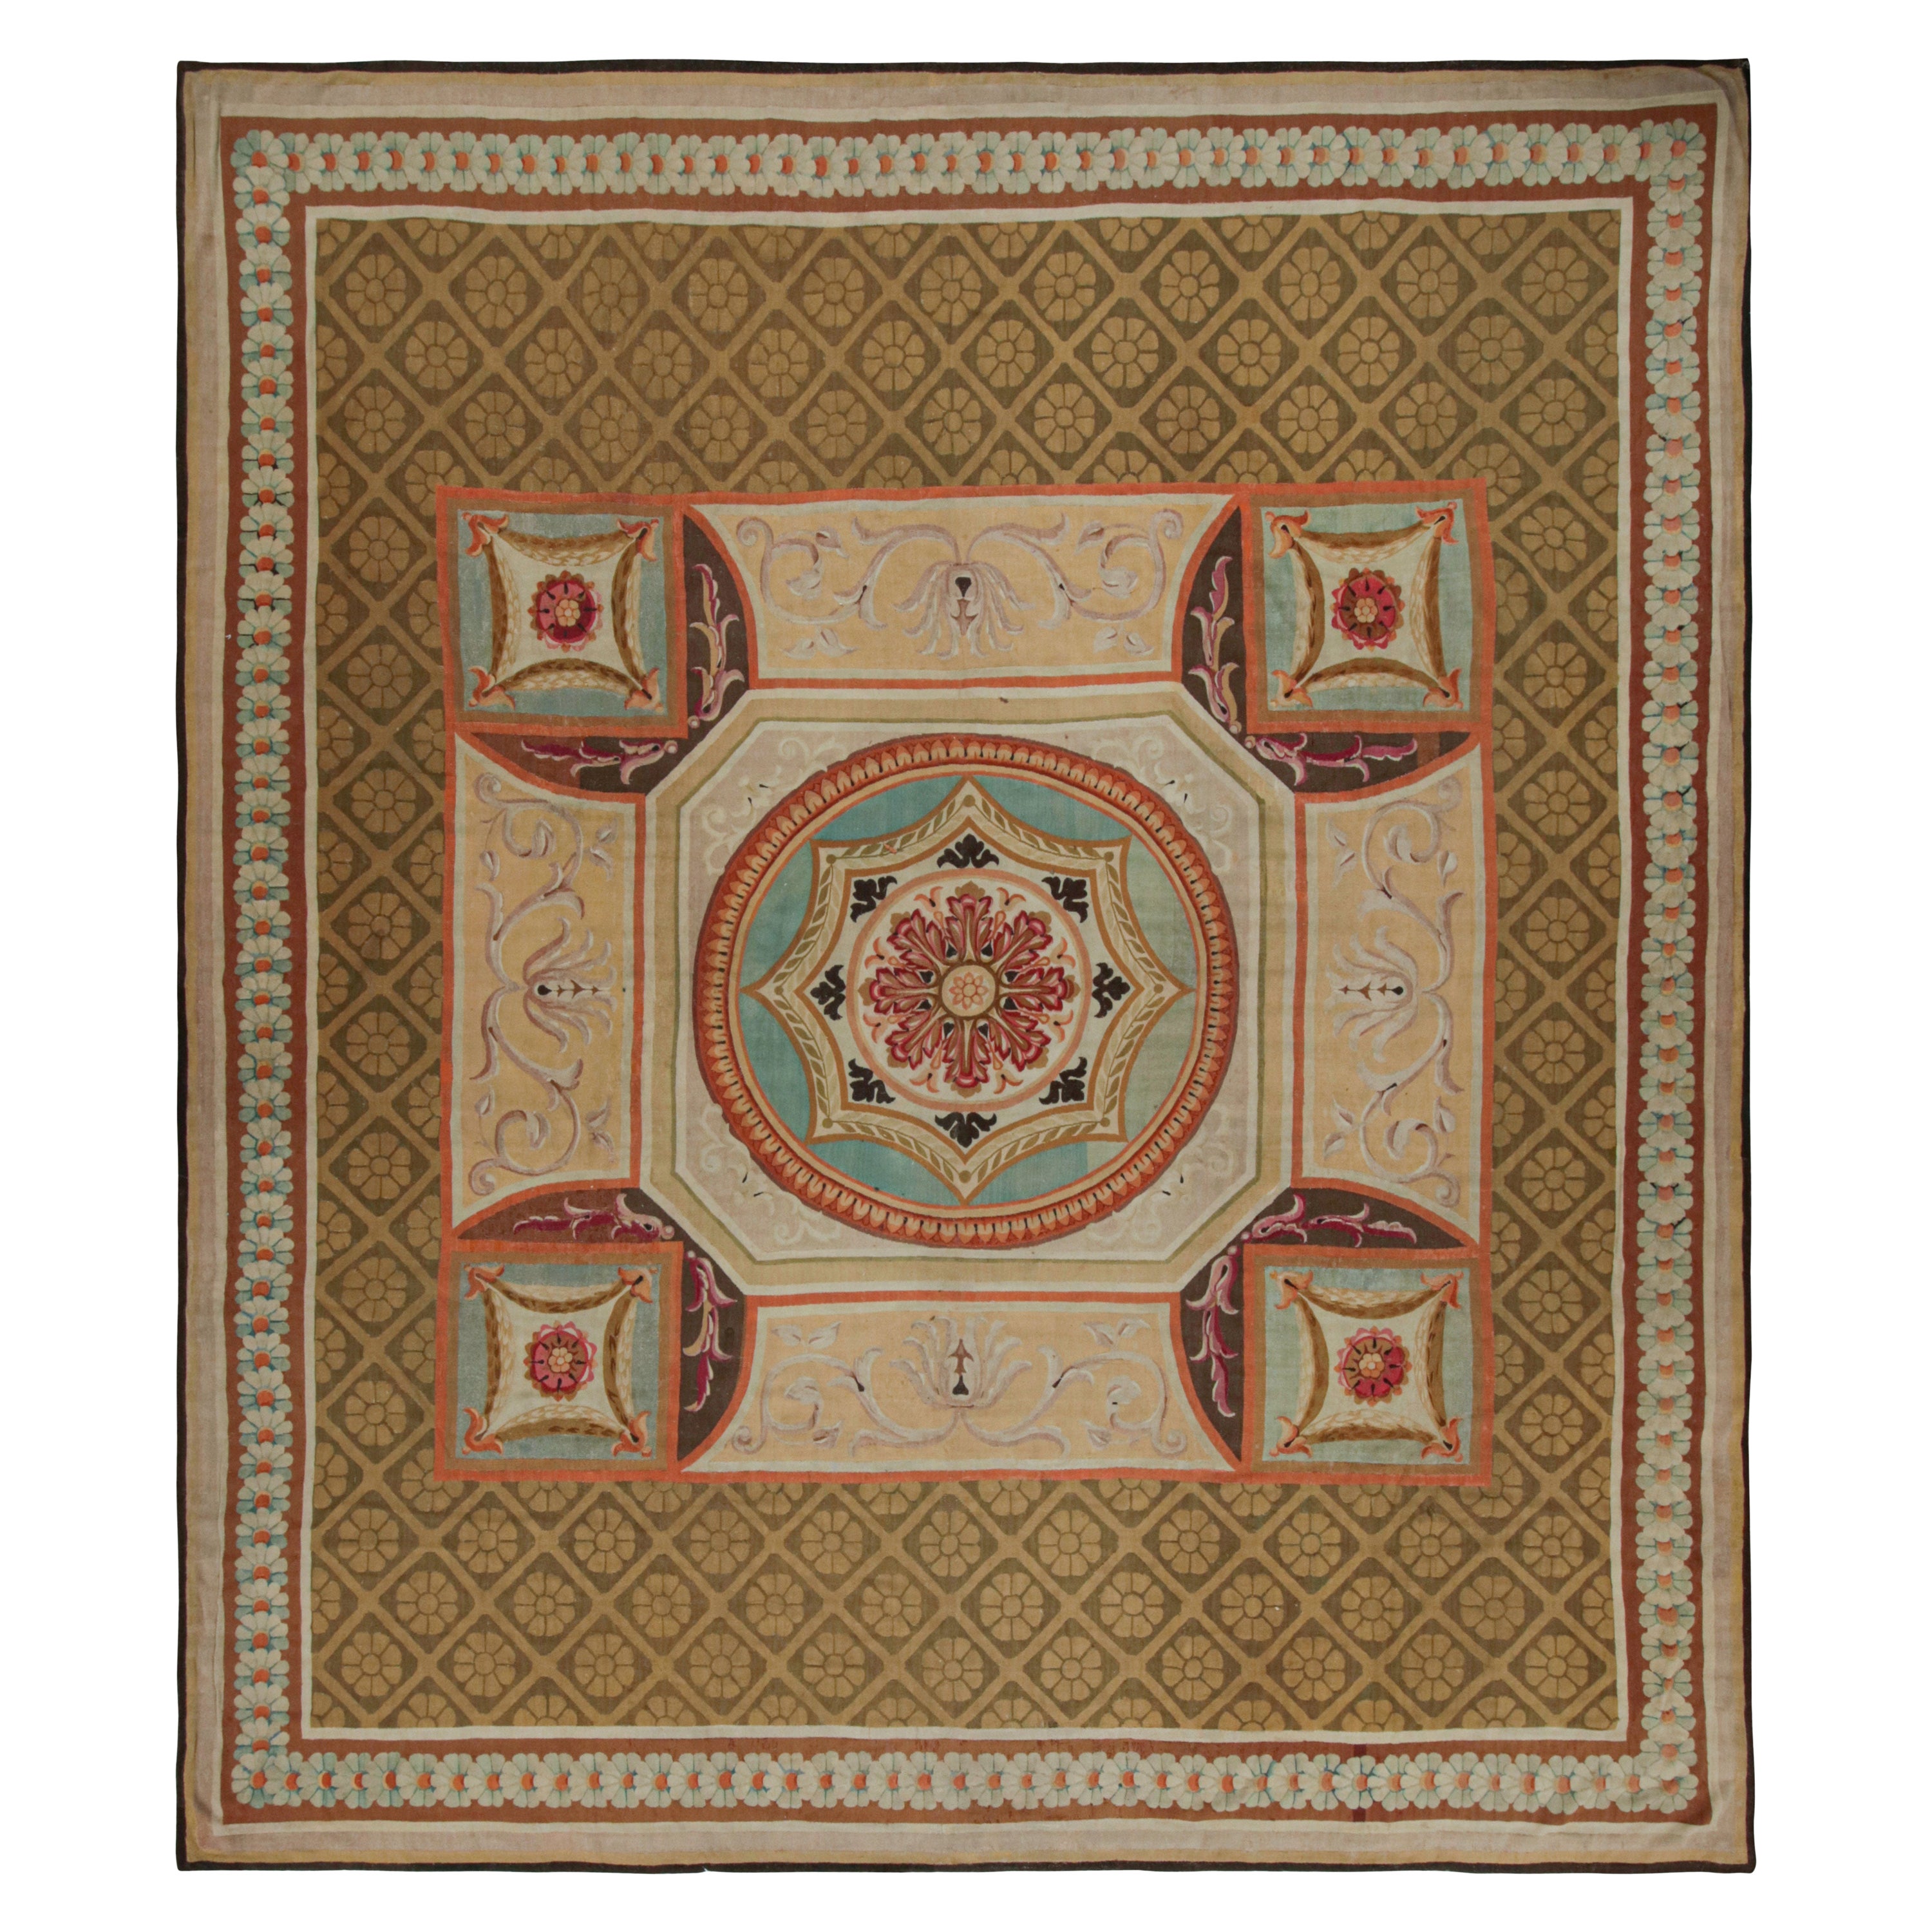 Antiker französischer Aubusson-Teppich im französischen Stil, mit Medaillon und Blumenmuster